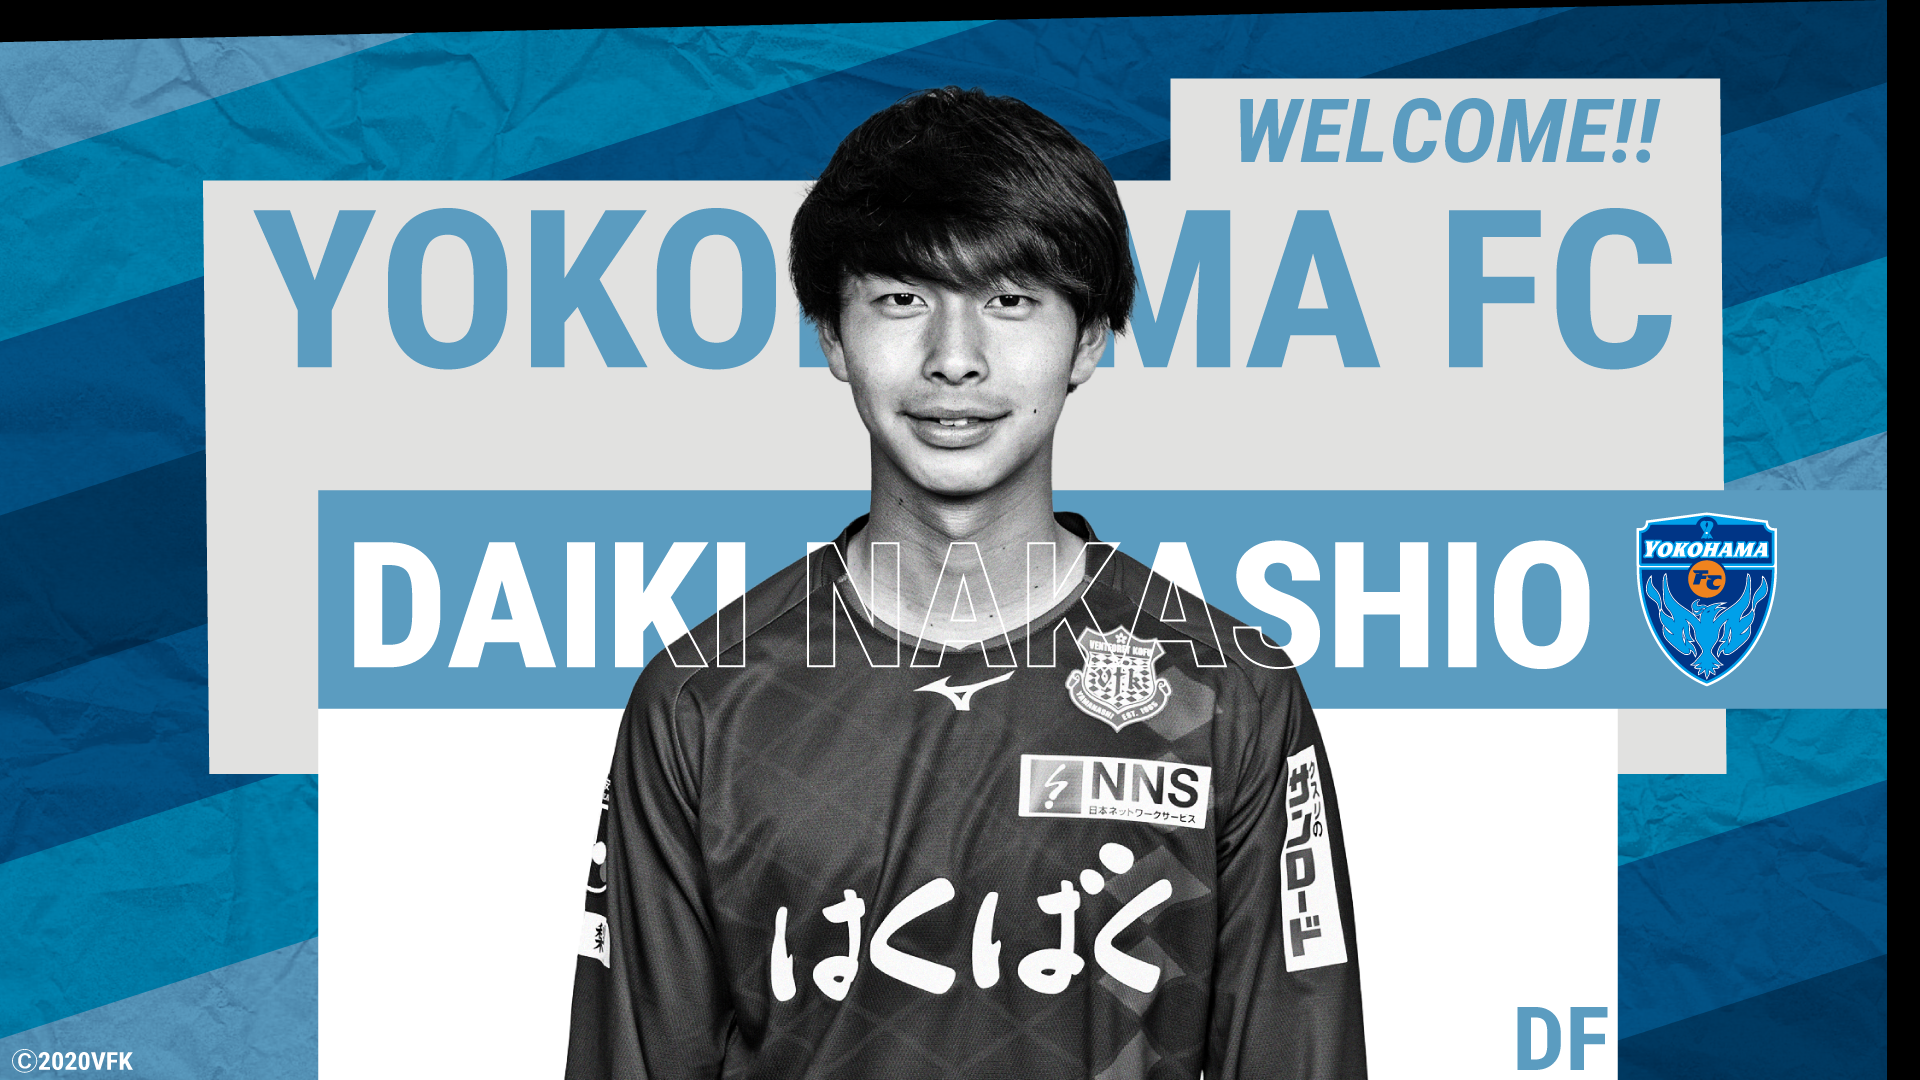 Df 中塩大貴選手 ヴァンフォーレ甲府より完全移籍加入のお知らせ 横浜fcオフィシャルウェブサイト